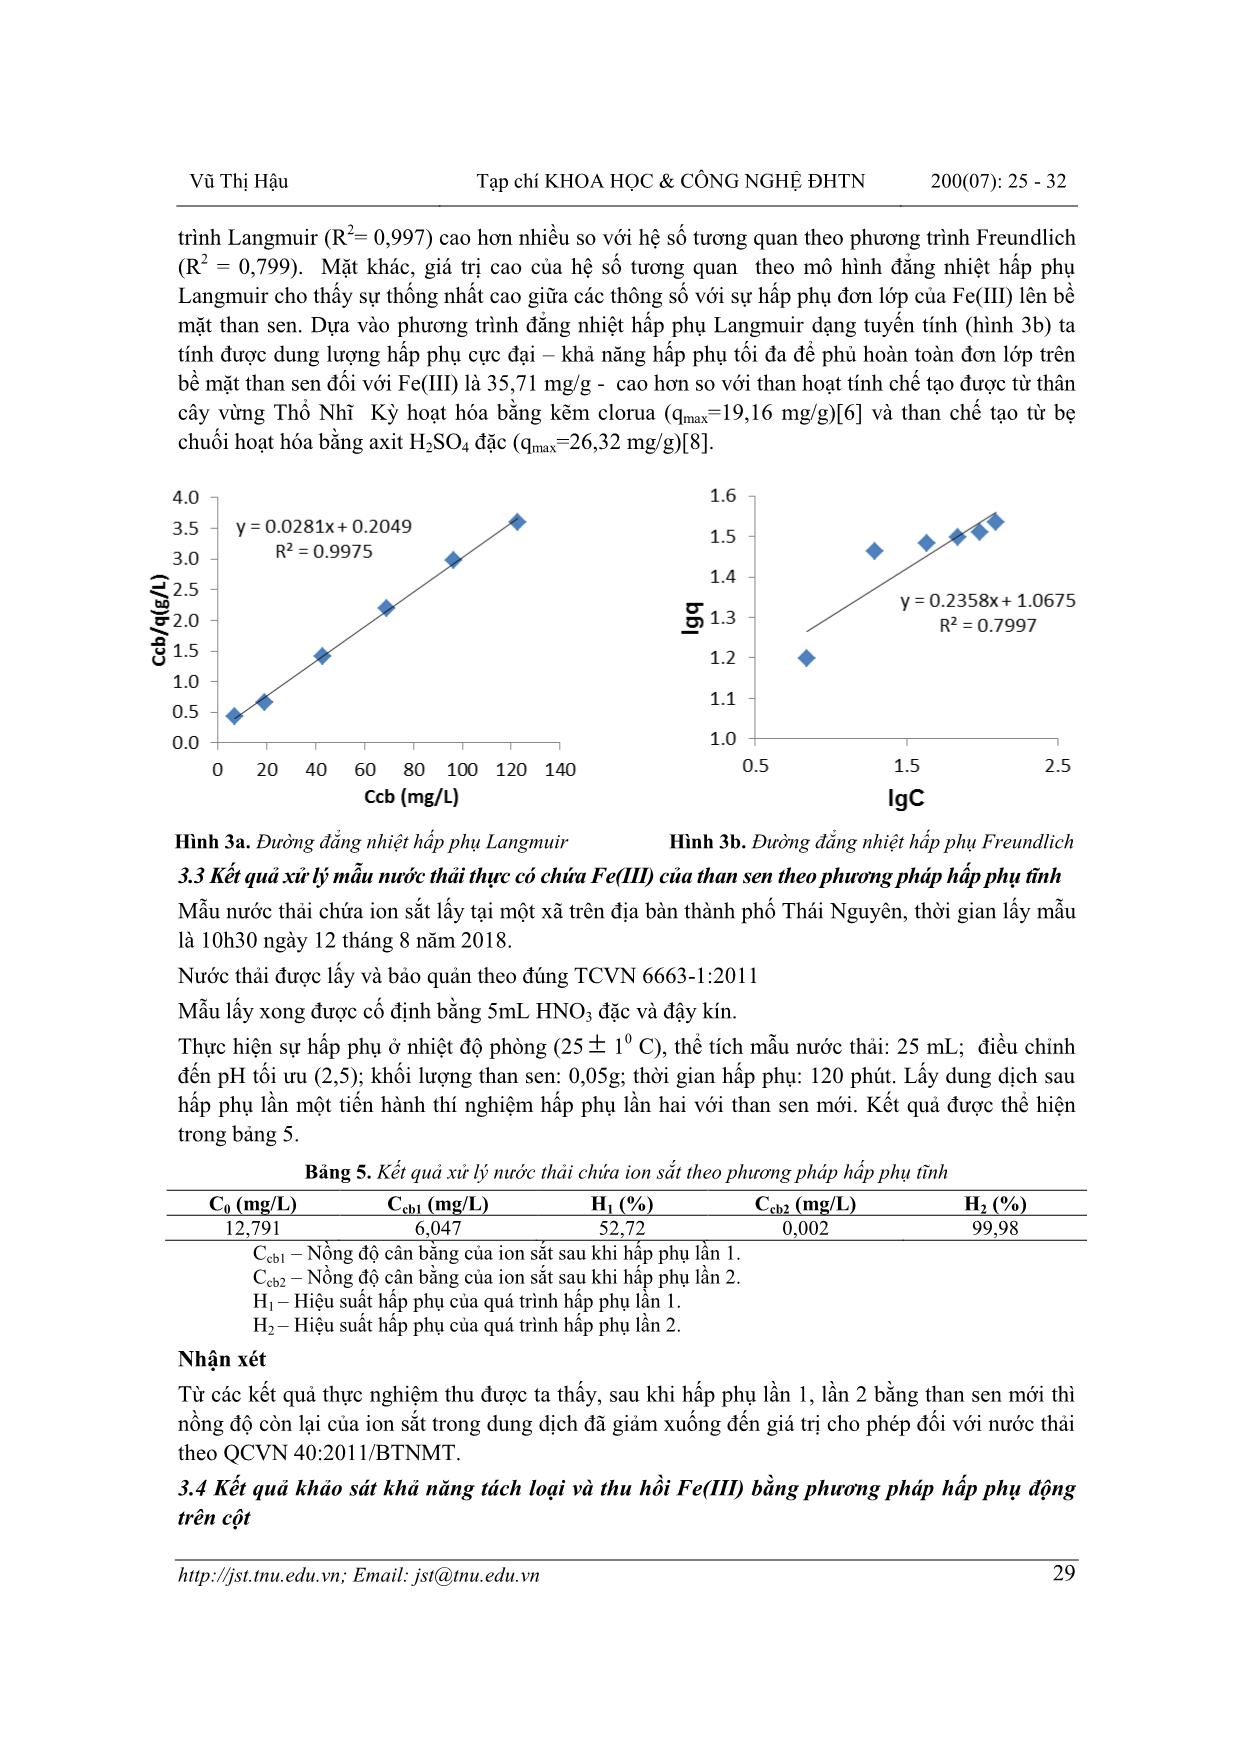 Nghiên cứu khả năng hấp phụ Fe(III) của than chế tạo từ cây sen hoạt hóa bằng Axit Sunfuric trang 5